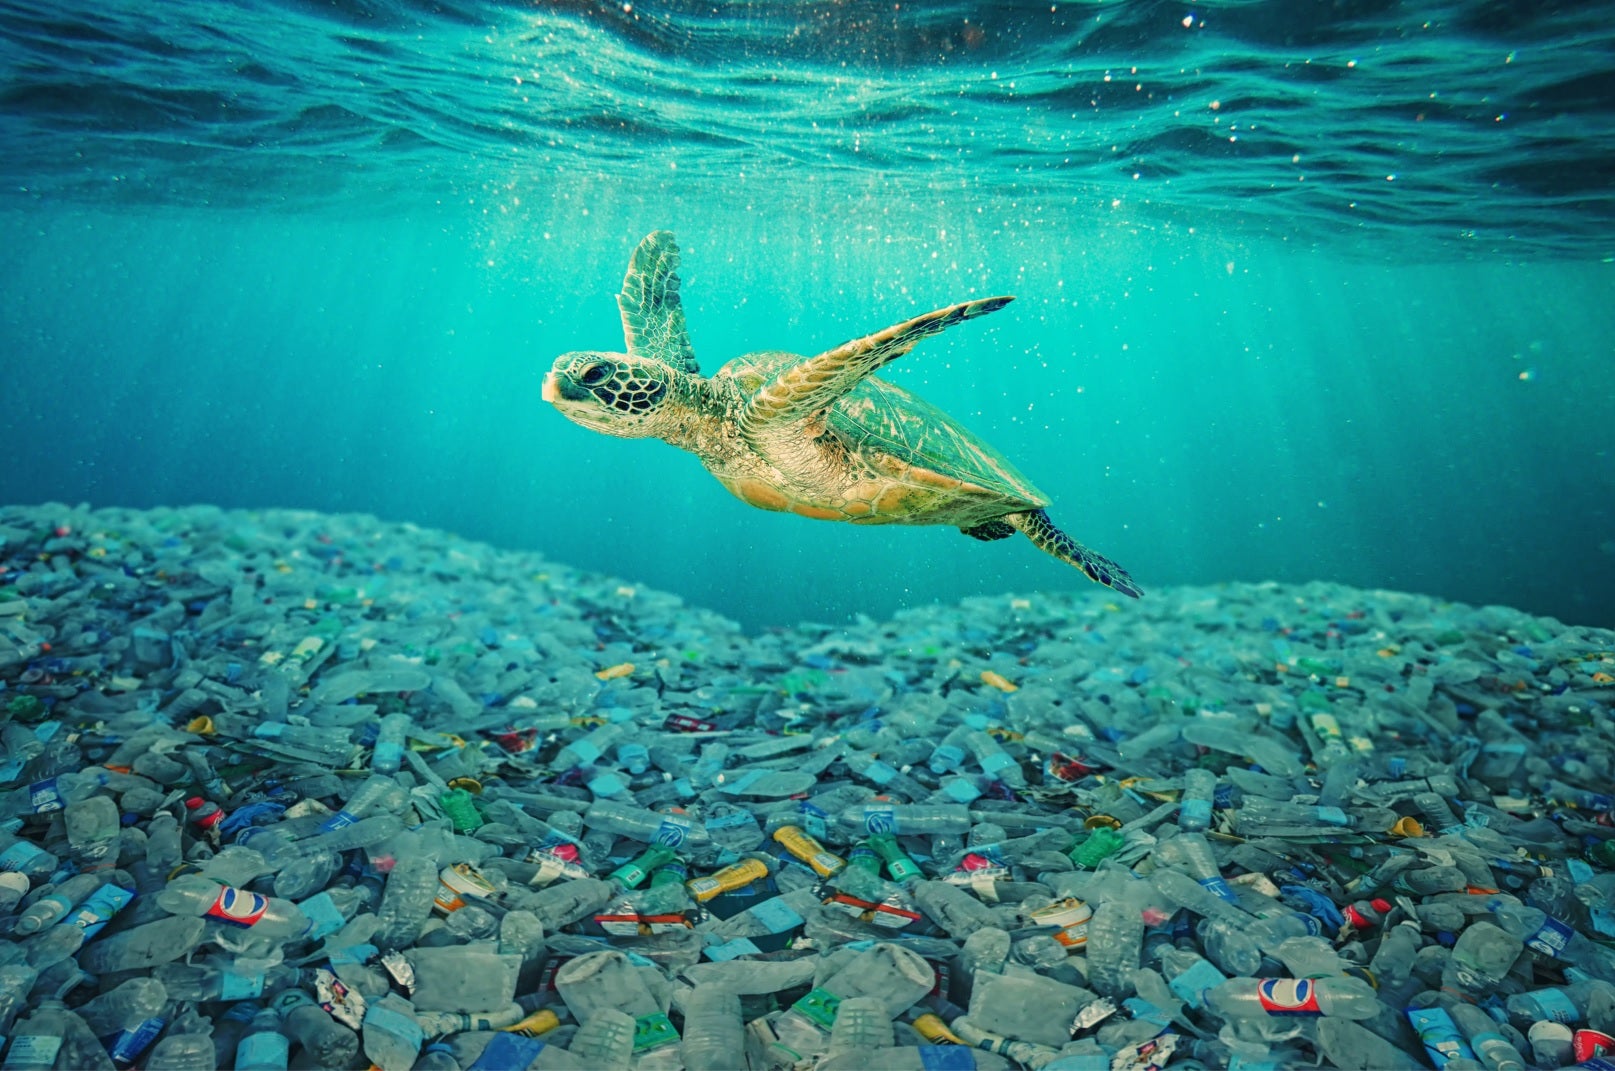 Plástico no Oceano: como eles vão parar lá e quais os impactos